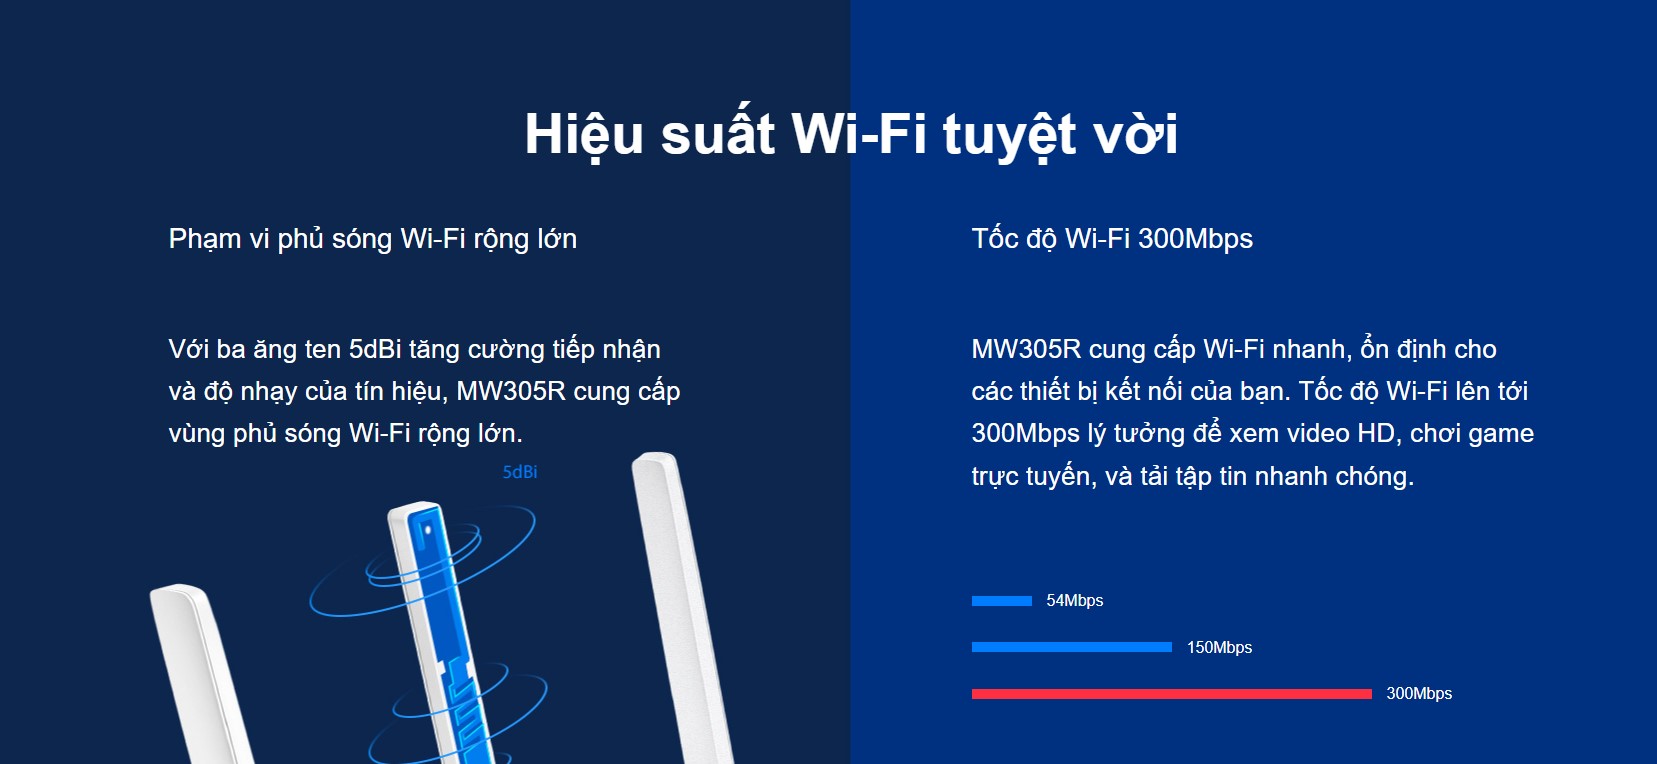 Bộ Phát Wifi Mercusys MW305R Chuẩn Tốc Độ 300Mbps